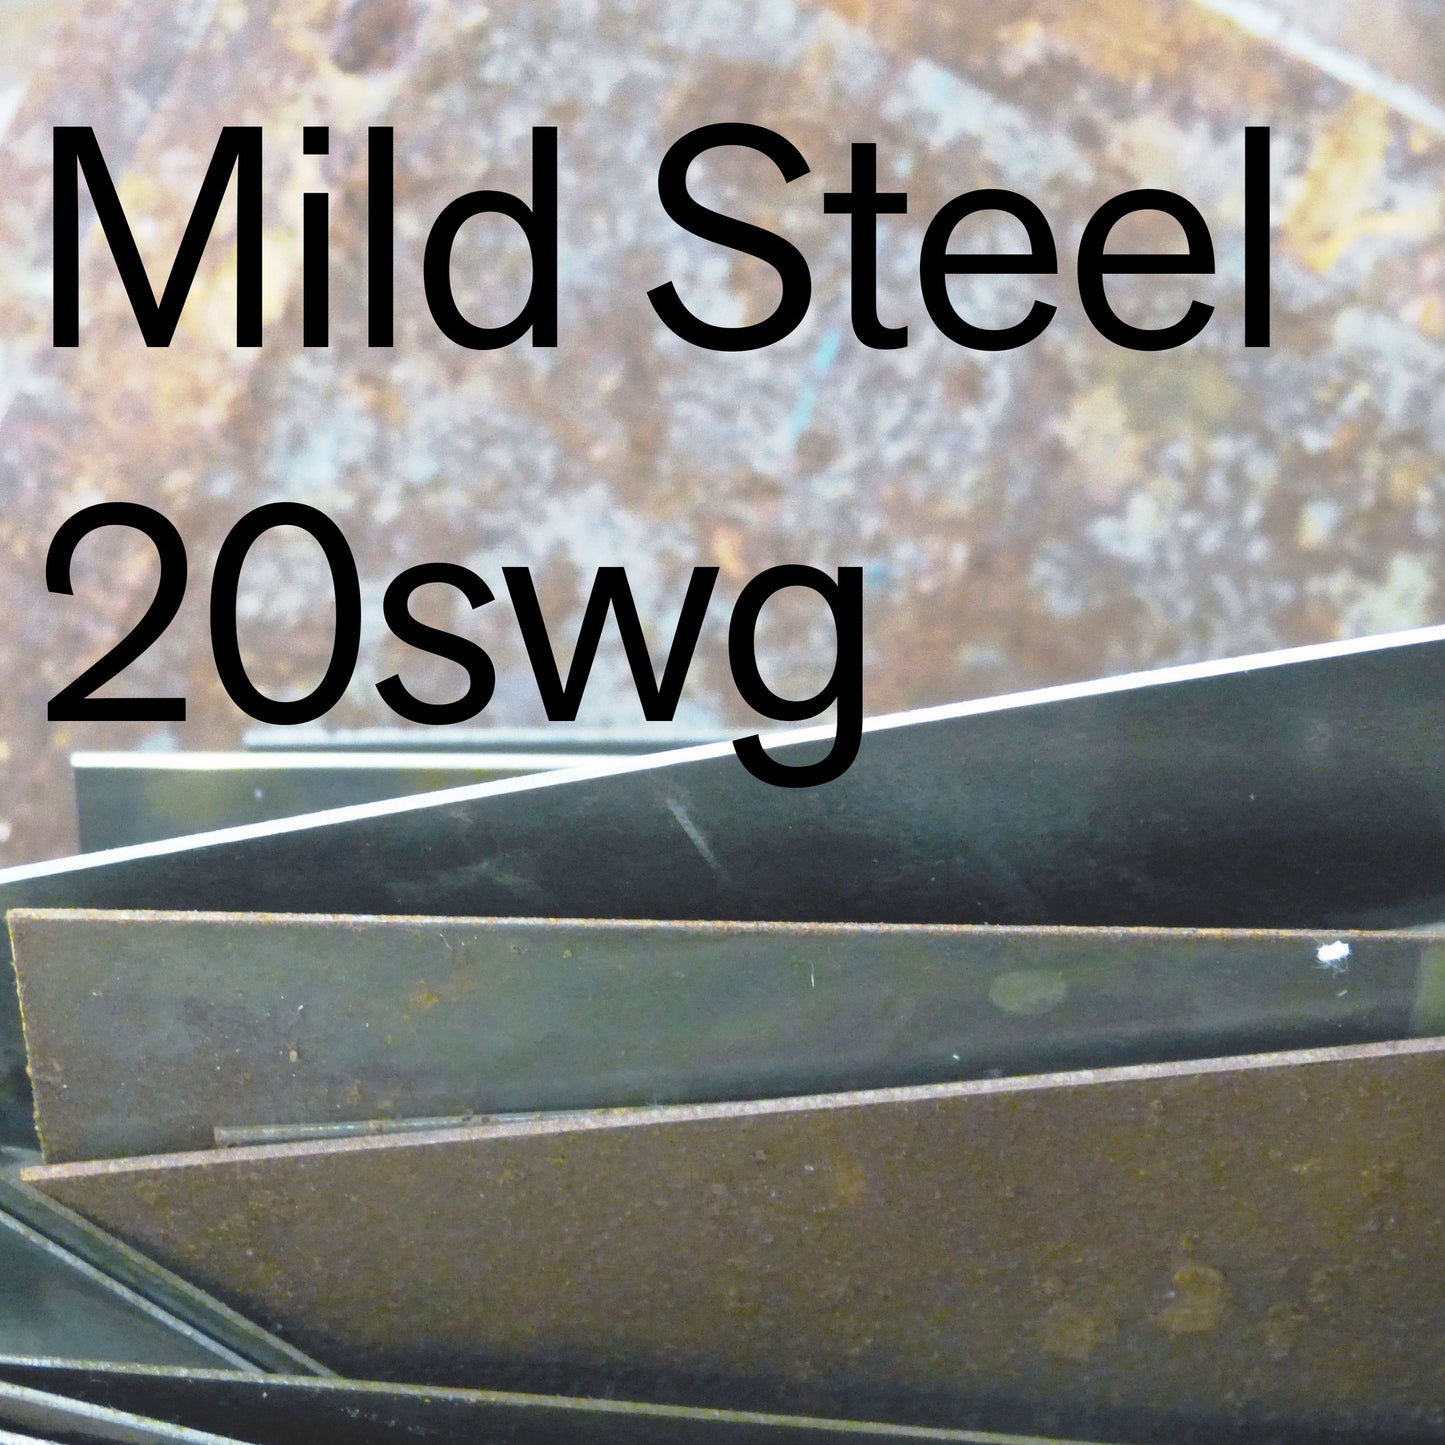 Mild Steel 20swg